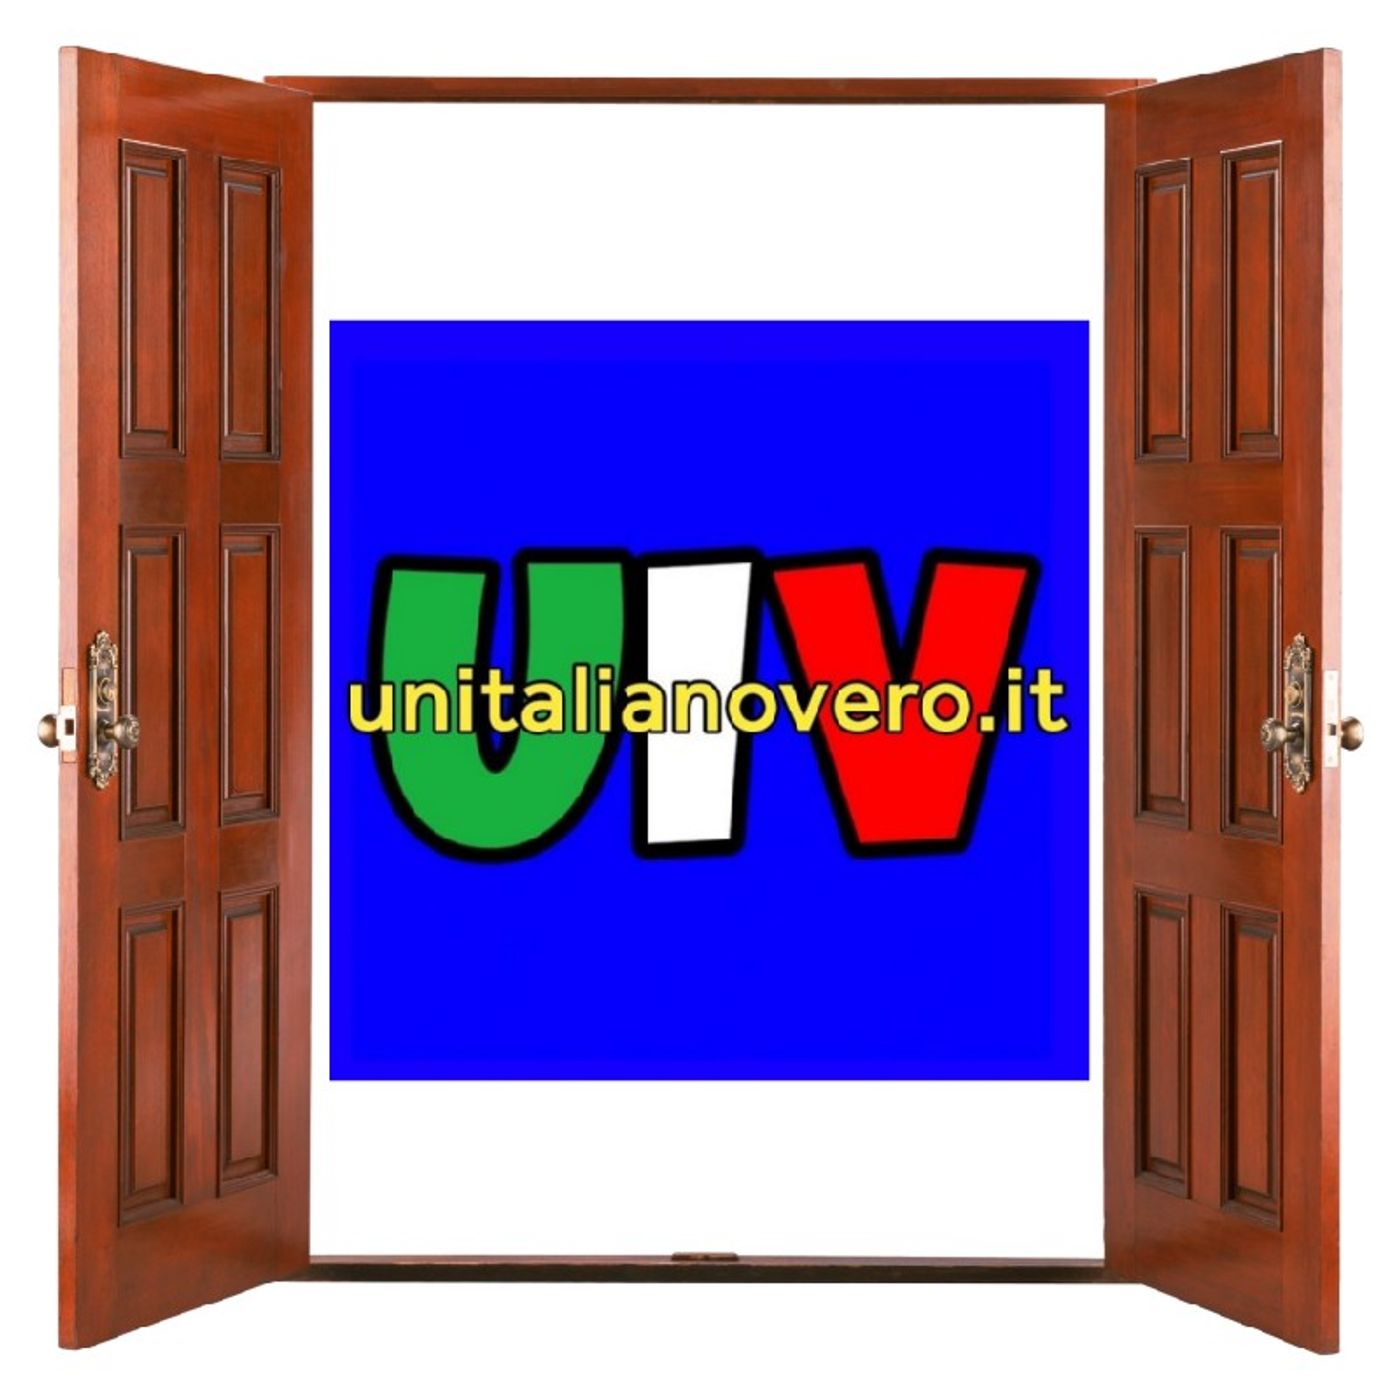 In "UIV - Un Italiano Vero" non ci sono gerarchie